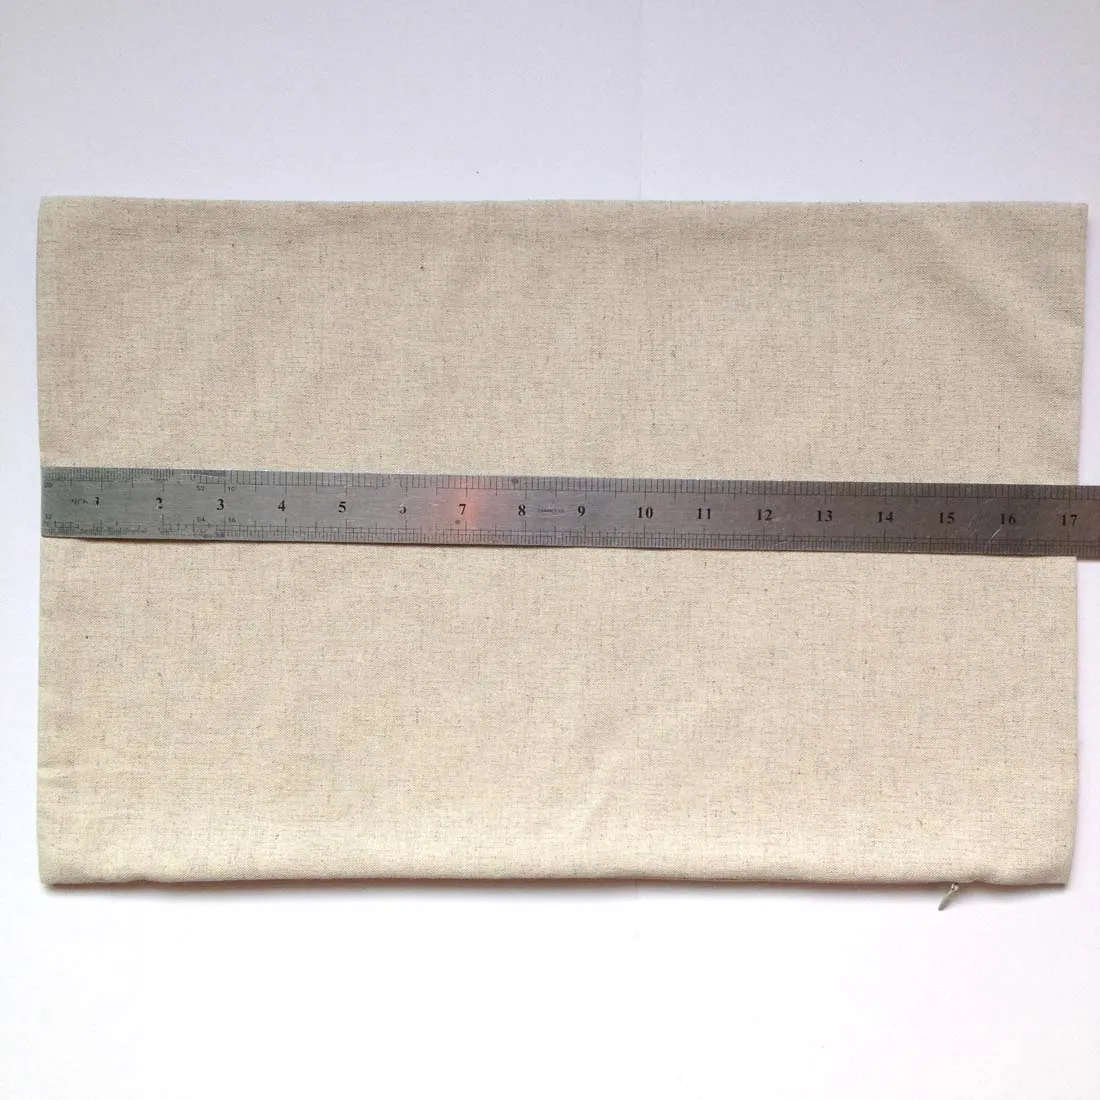 Coprolo lombare Linencotton naturale semplice per stampato personalizzato 11x17in cuscino in biancheria vuota per nave da stampa a verniciatura fai -da -te da D160O